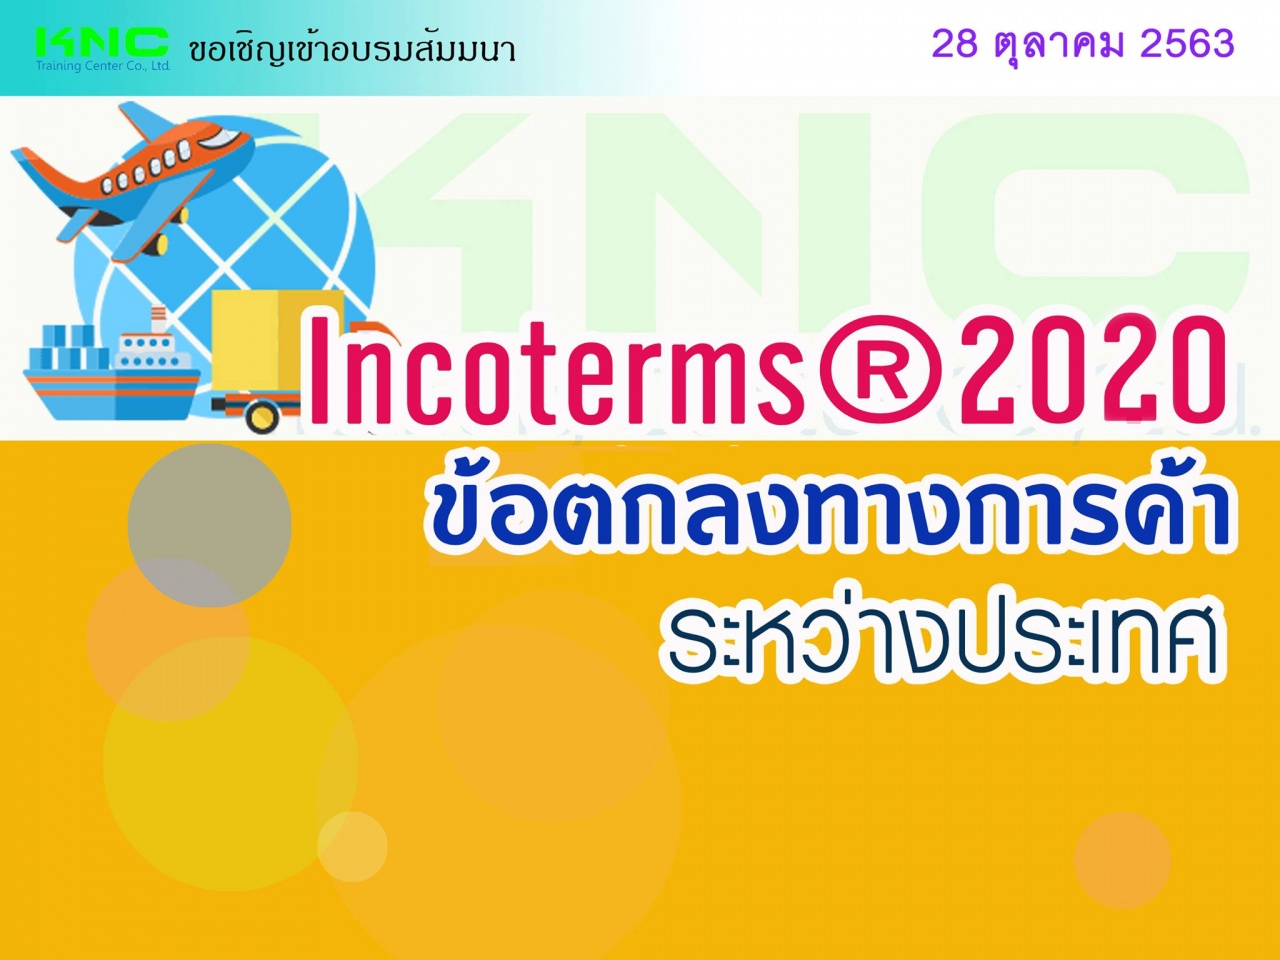 INCOTERMS ® 2020 (ข้อตกลงทางการค้าระหว่างประเทศ)